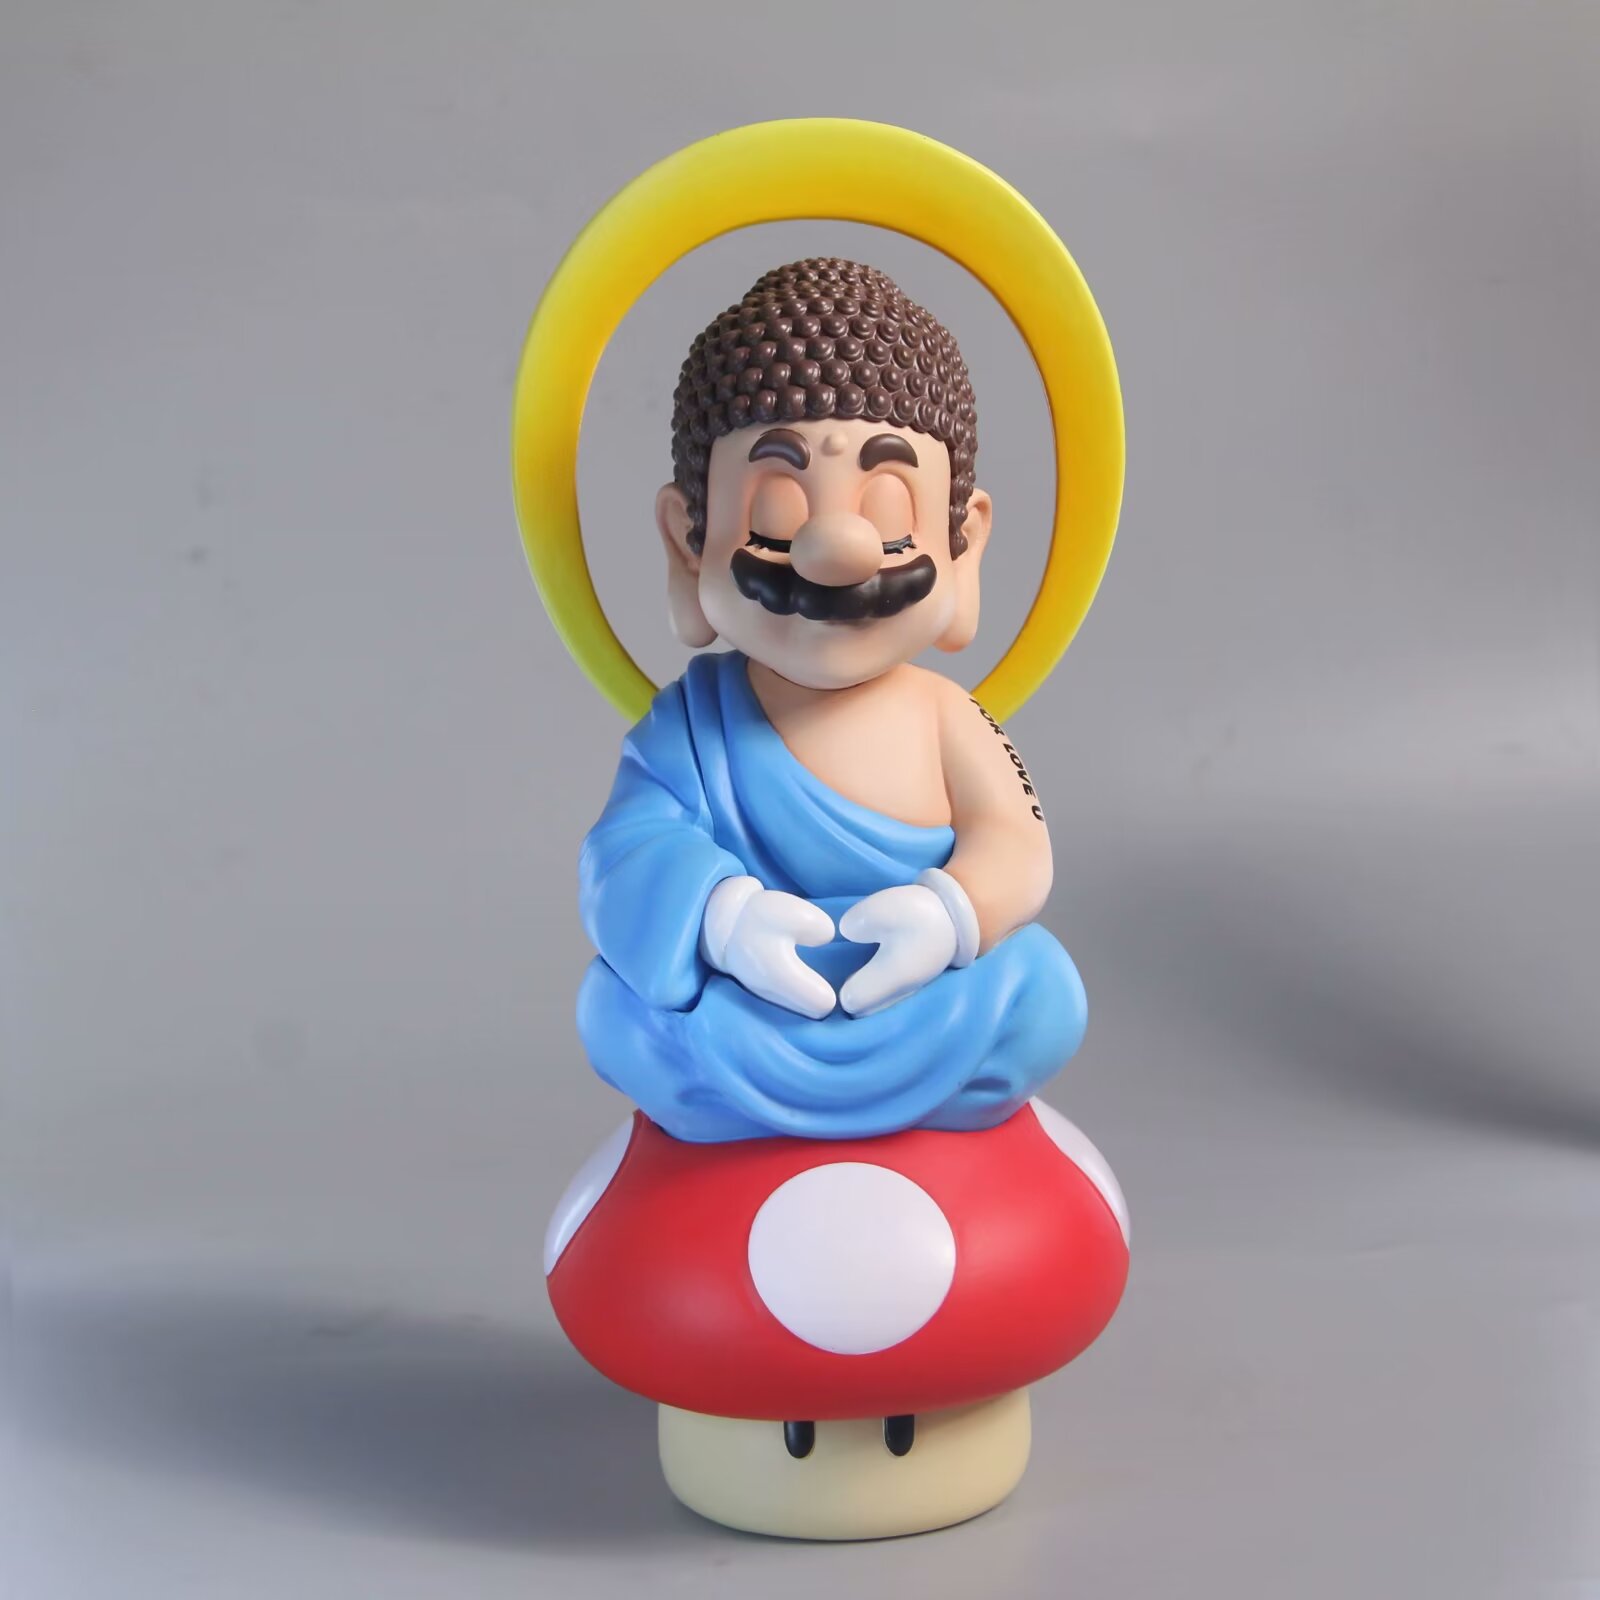 super Mario anime figure 24cm